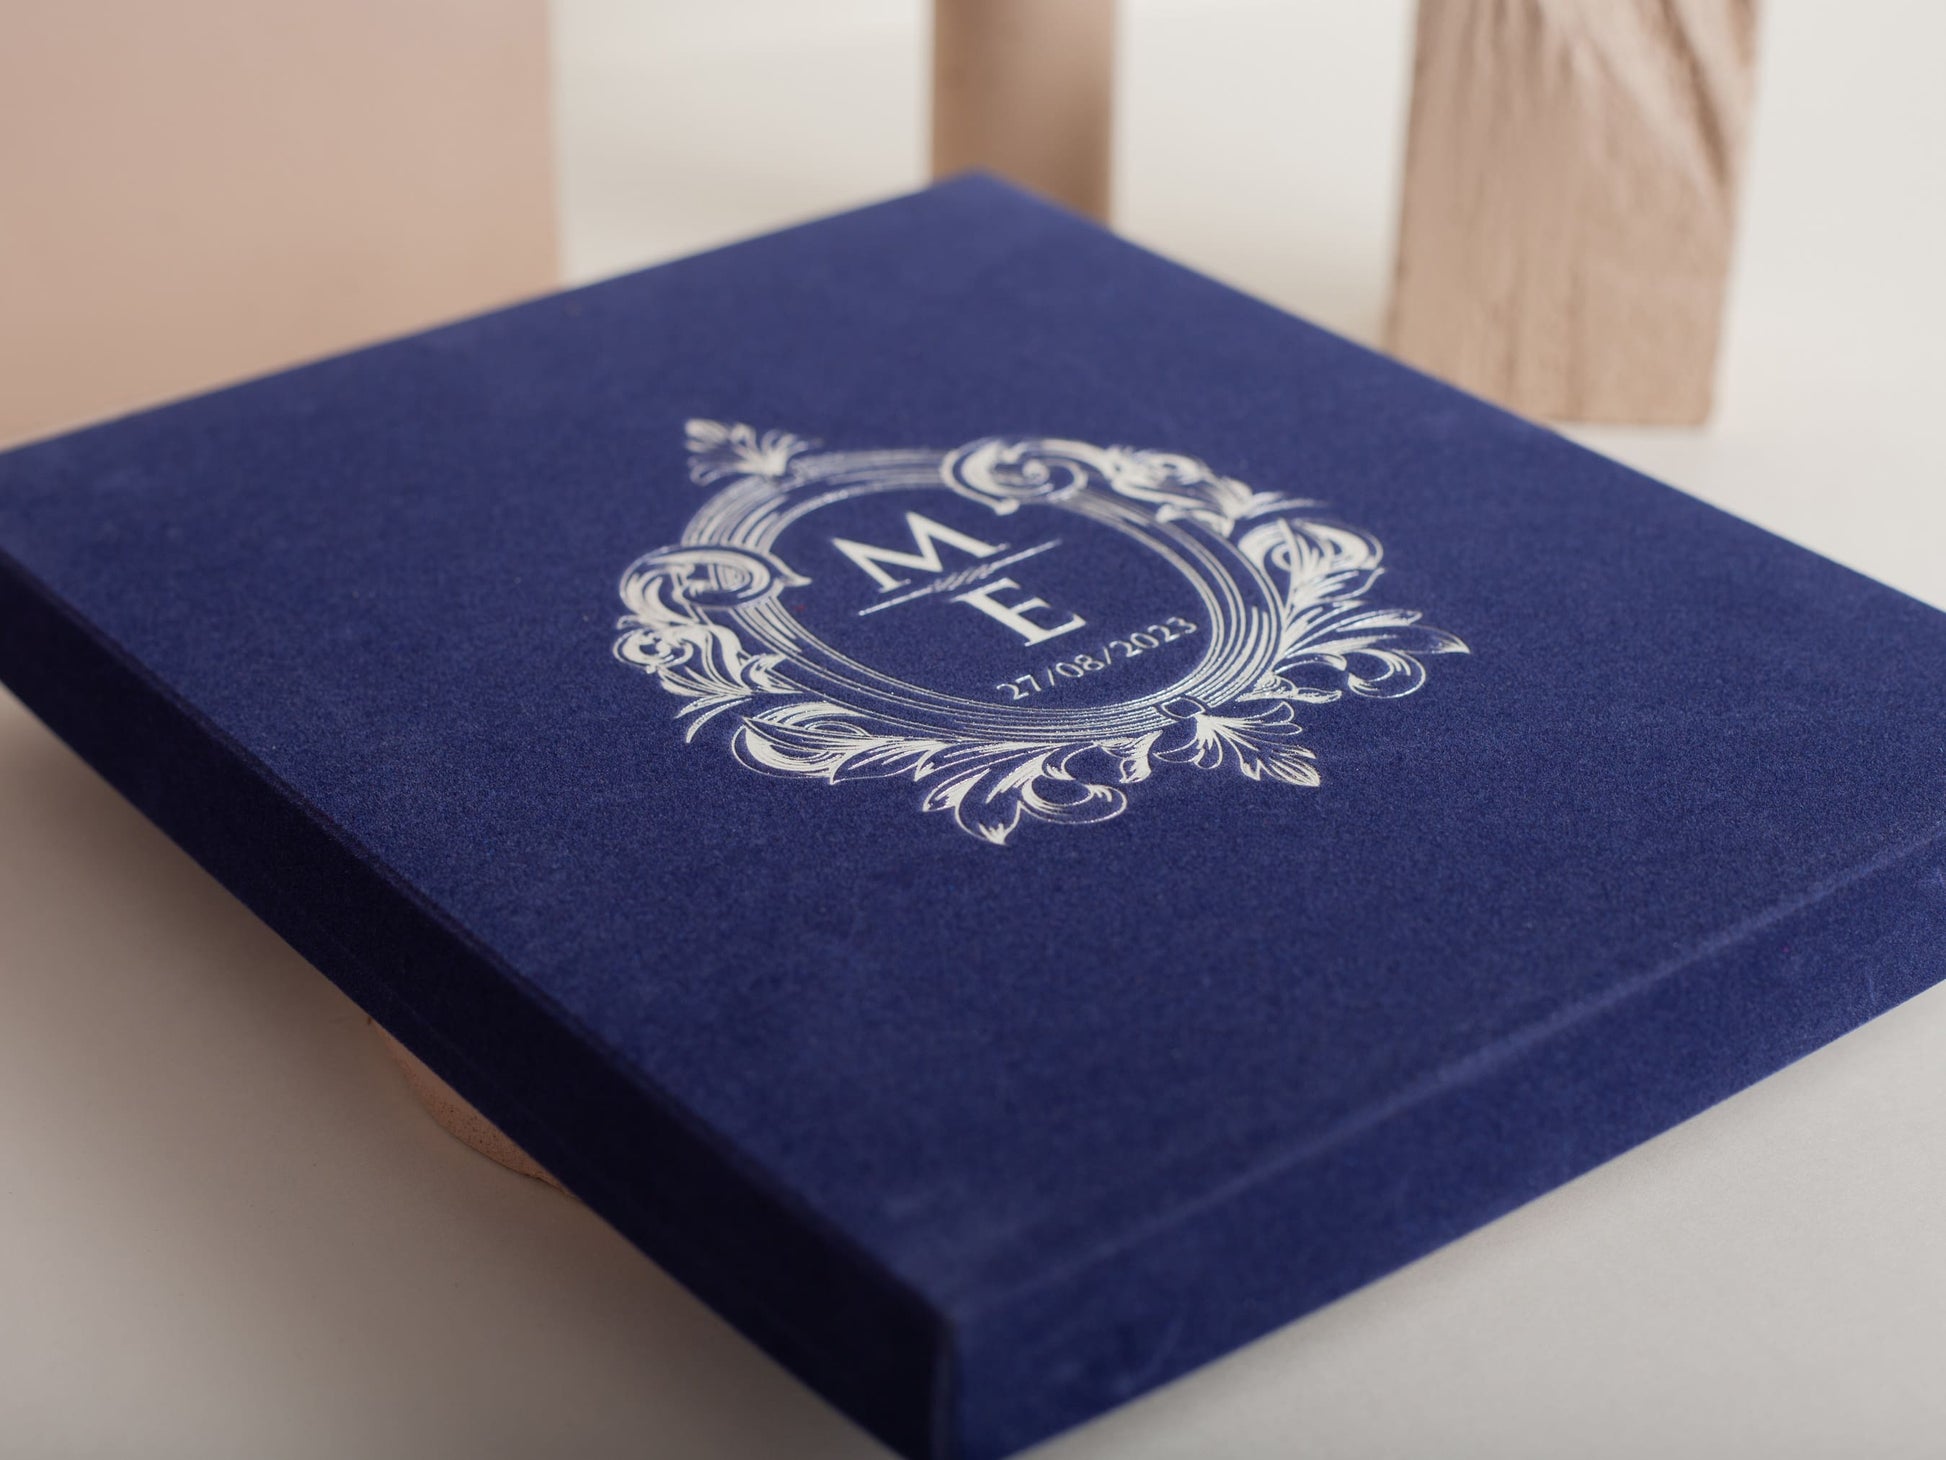 Box style dark blue velvet invitation